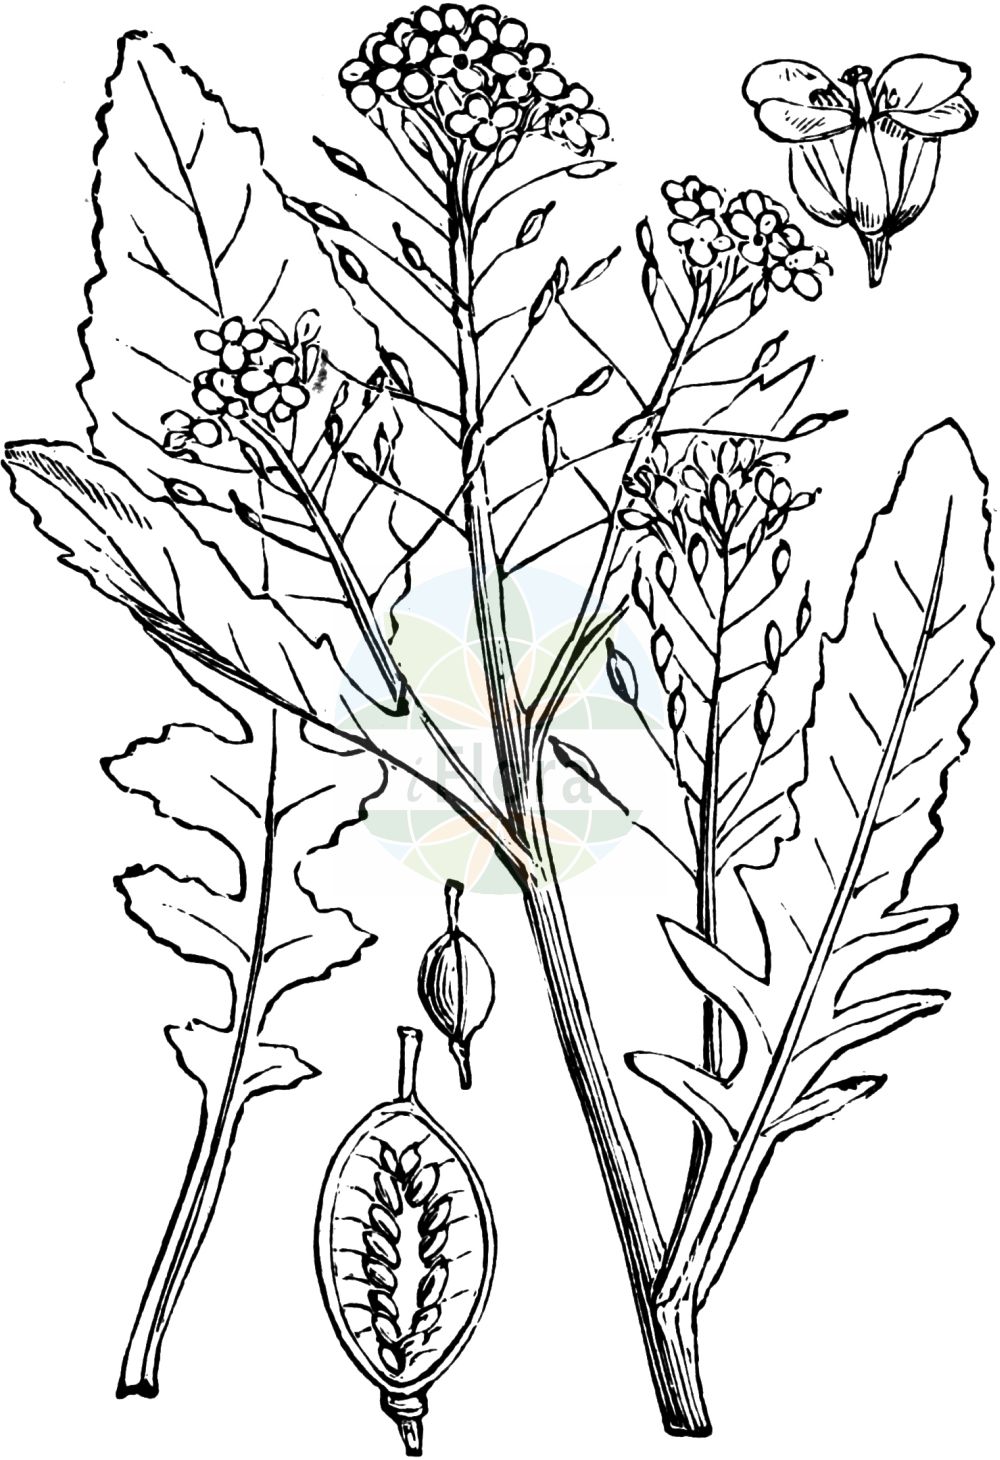 Historische Abbildung von Rorippa amphibia (Wasser-Sumpfkresse - Great Yellow-cress). Das Bild zeigt Blatt, Bluete, Frucht und Same. ---- Historical Drawing of Rorippa amphibia (Wasser-Sumpfkresse - Great Yellow-cress). The image is showing leaf, flower, fruit and seed.(Rorippa amphibia,Wasser-Sumpfkresse,Great Yellow-cress,Brachiolobos amphibius,Brachiolobus amphibius,Nasturtium amphibium,Nasturtium fluviatile,Radicula amphibia,Rorippa amphibia,Sisymbrium amphibium,Sisymbrium stoloniferum,Wasser-Sumpfkresse,Ufer-Sumpfkresse,Great Yellow-cress,Rorippa,Sumpfkresse,Yellowcress,Brassicaceae,Kreuzblütler,Cabbage family,Blatt,Bluete,Frucht,Same,leaf,flower,fruit,seed,Fitch et al. (1880))